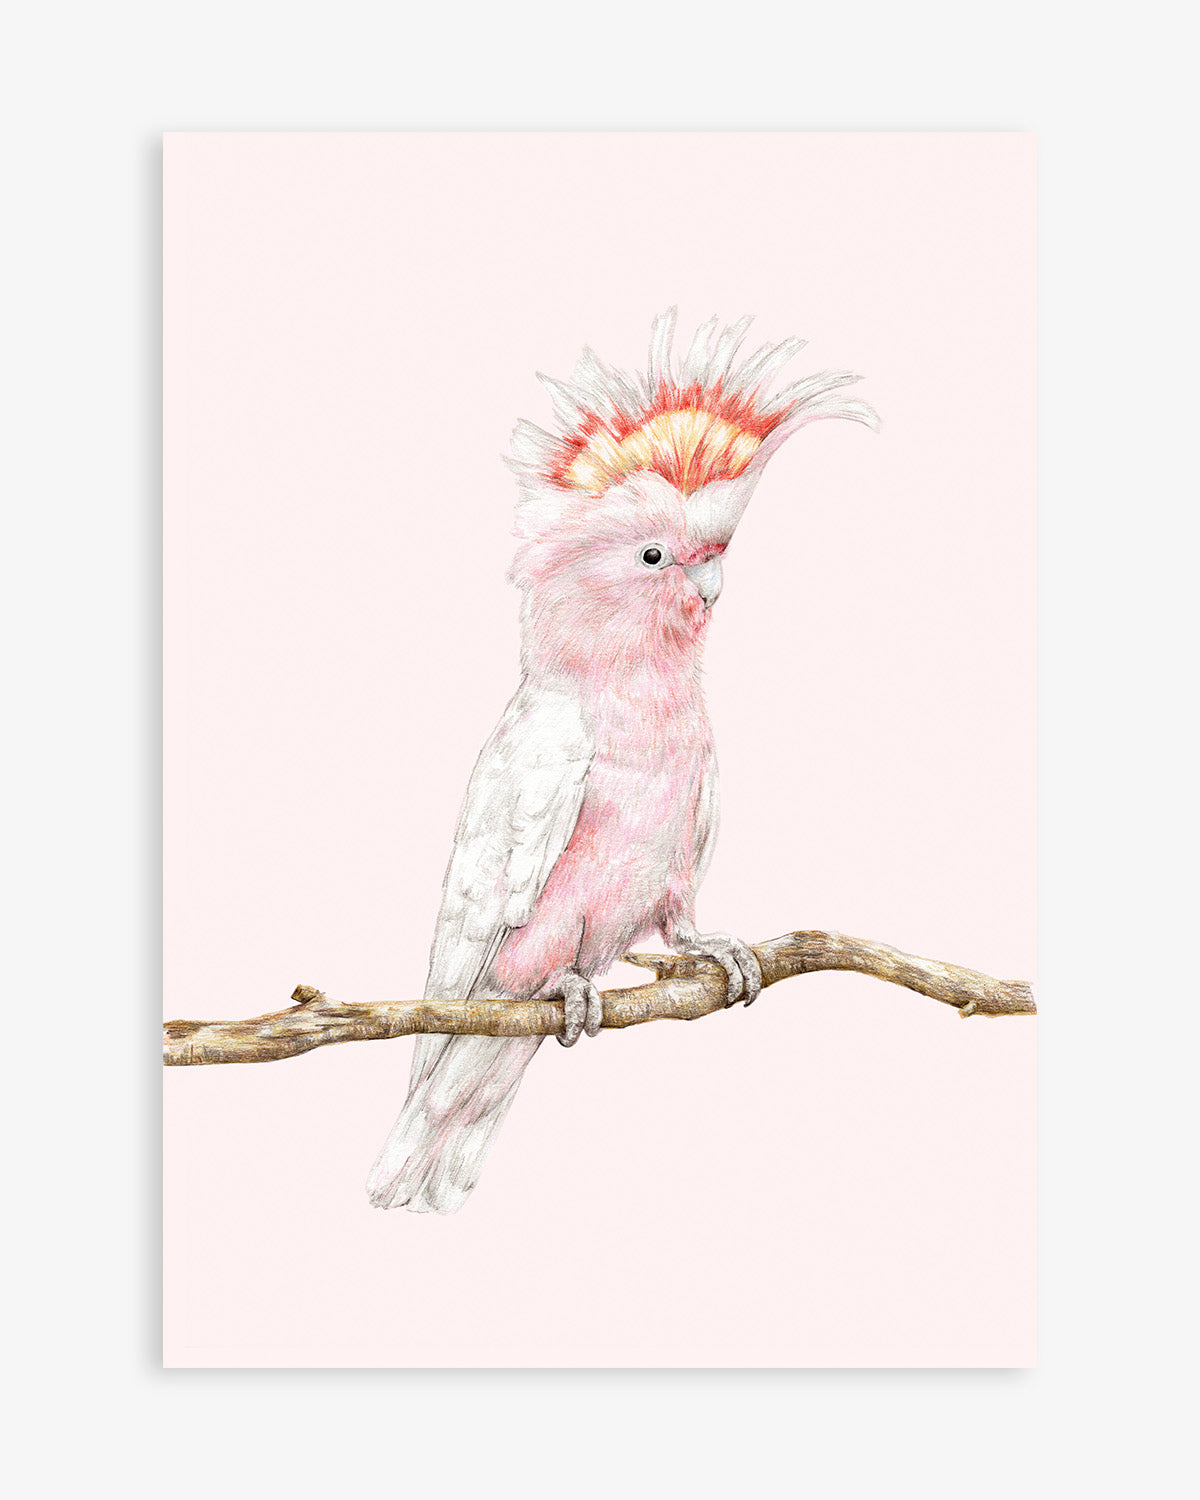 Australian bird art featuring a pink cockatoo